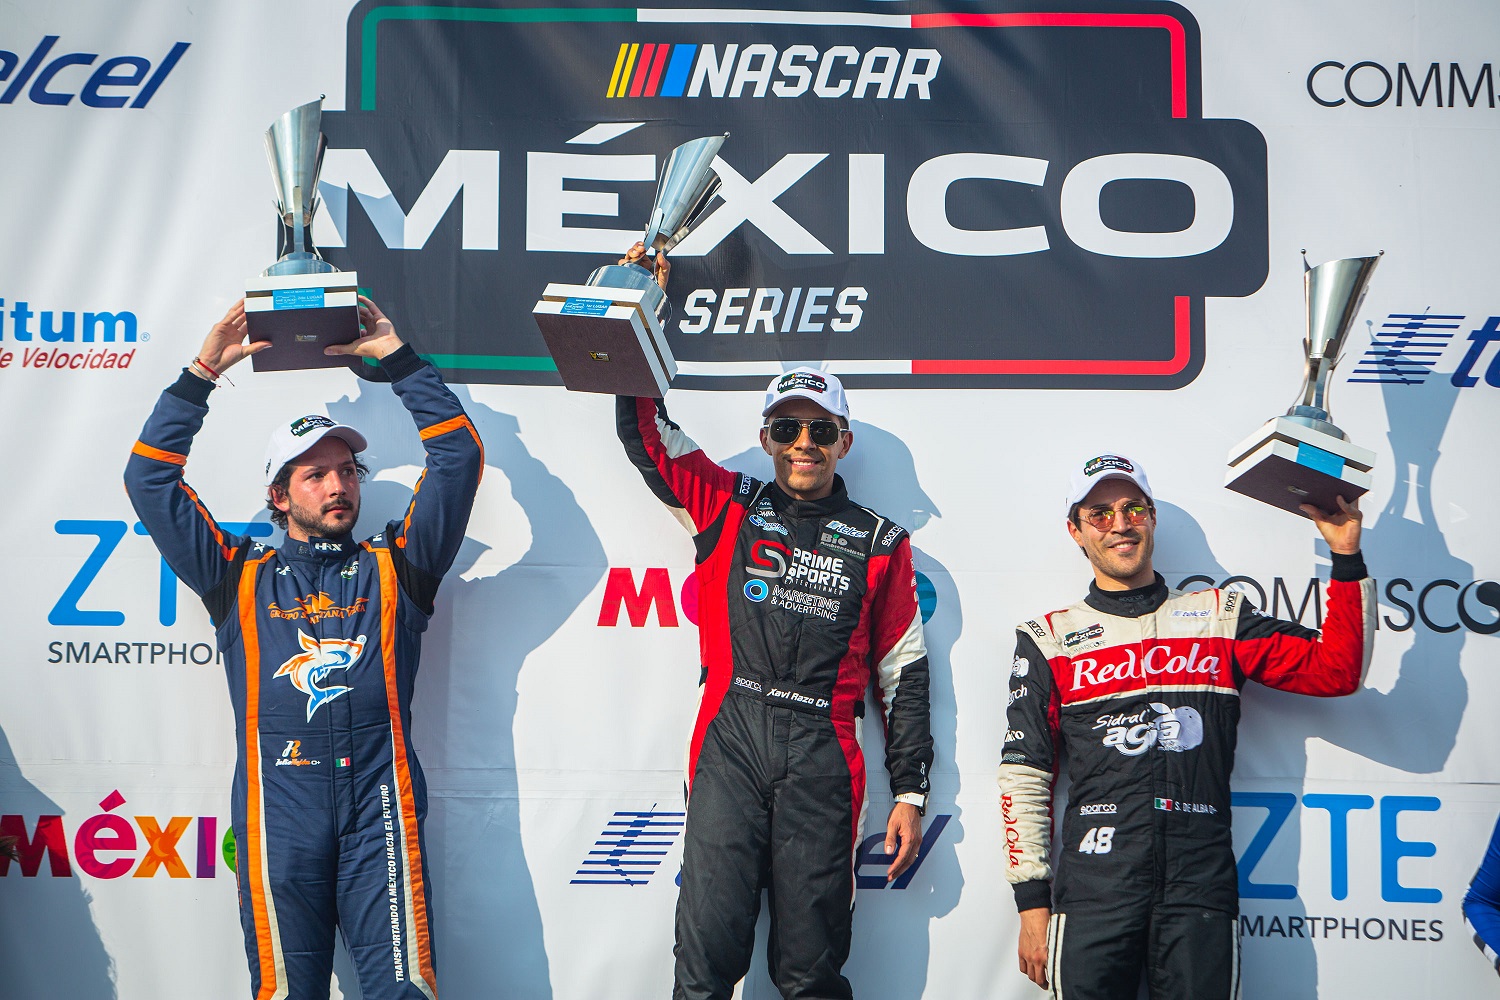 Razo se impone en la carrera los Cabos 200, primera fecha de Nascar México y Anvi Motorsport hace historia en la Challenge